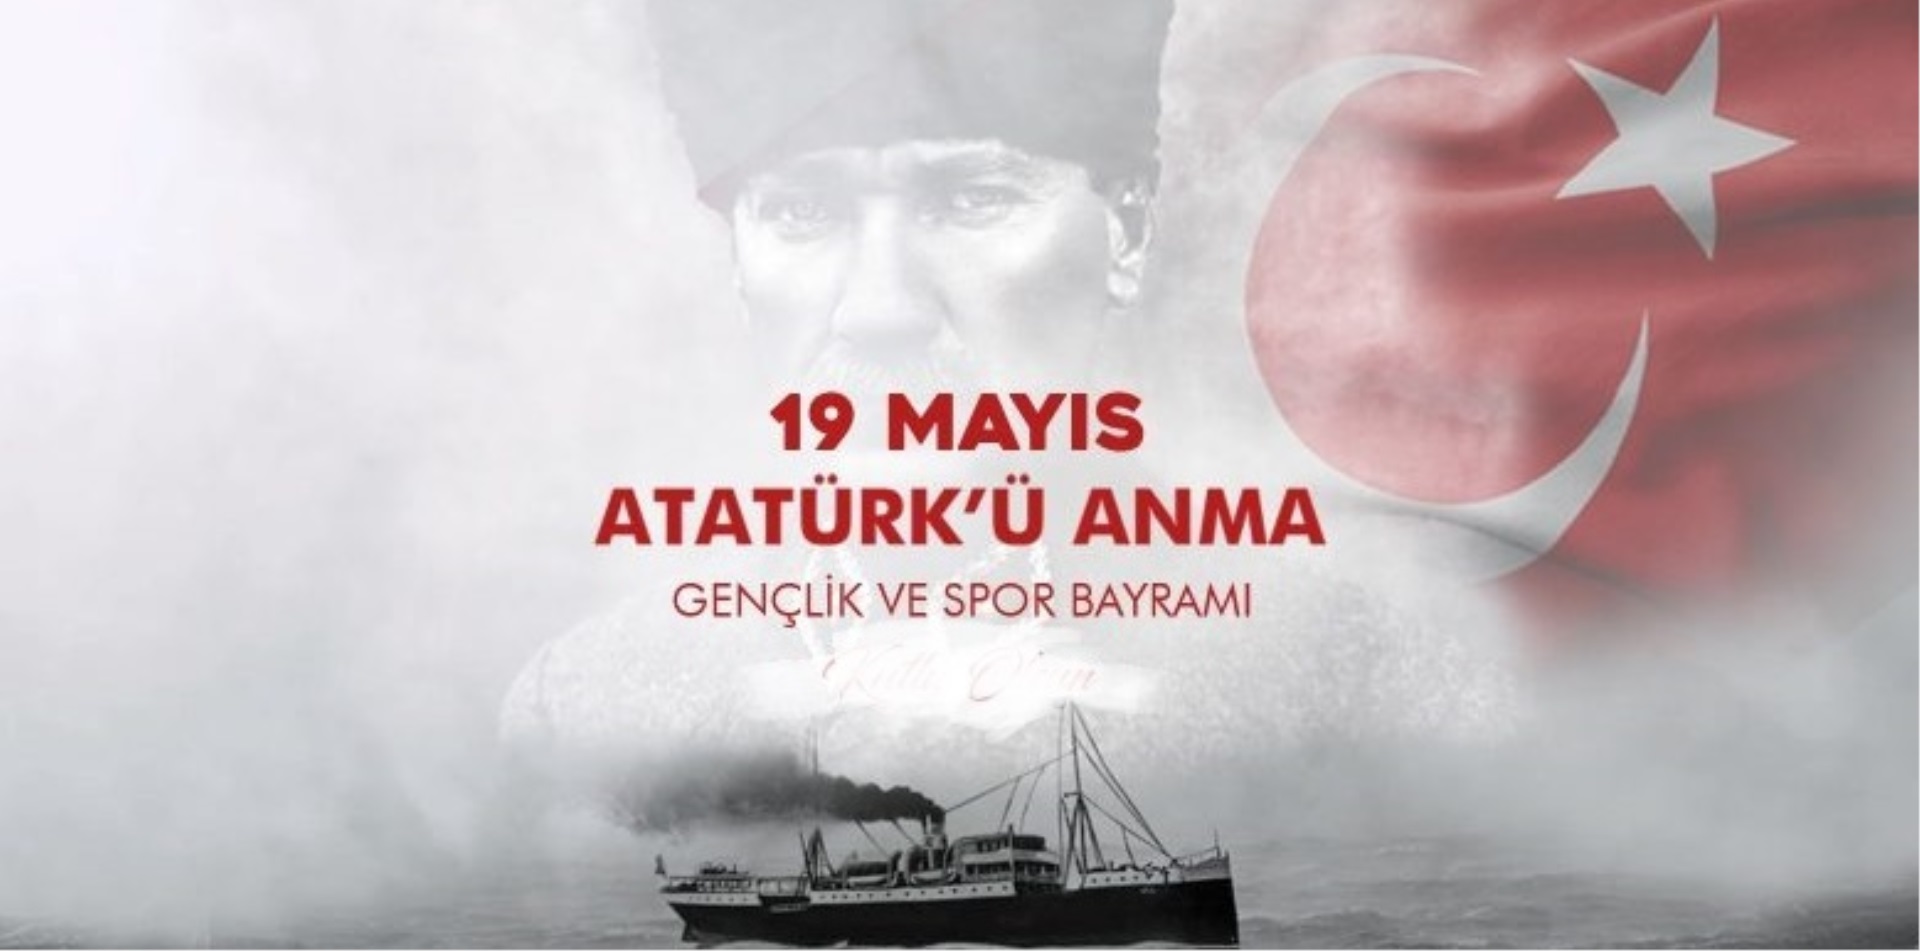 Cumhuriyet Başsavcımız Uygur Kaan ARISOY, gençlerin 19 Mayıs Atatürk'ü Anma Gençlik ve Spor Bayramı'nı kutladı.